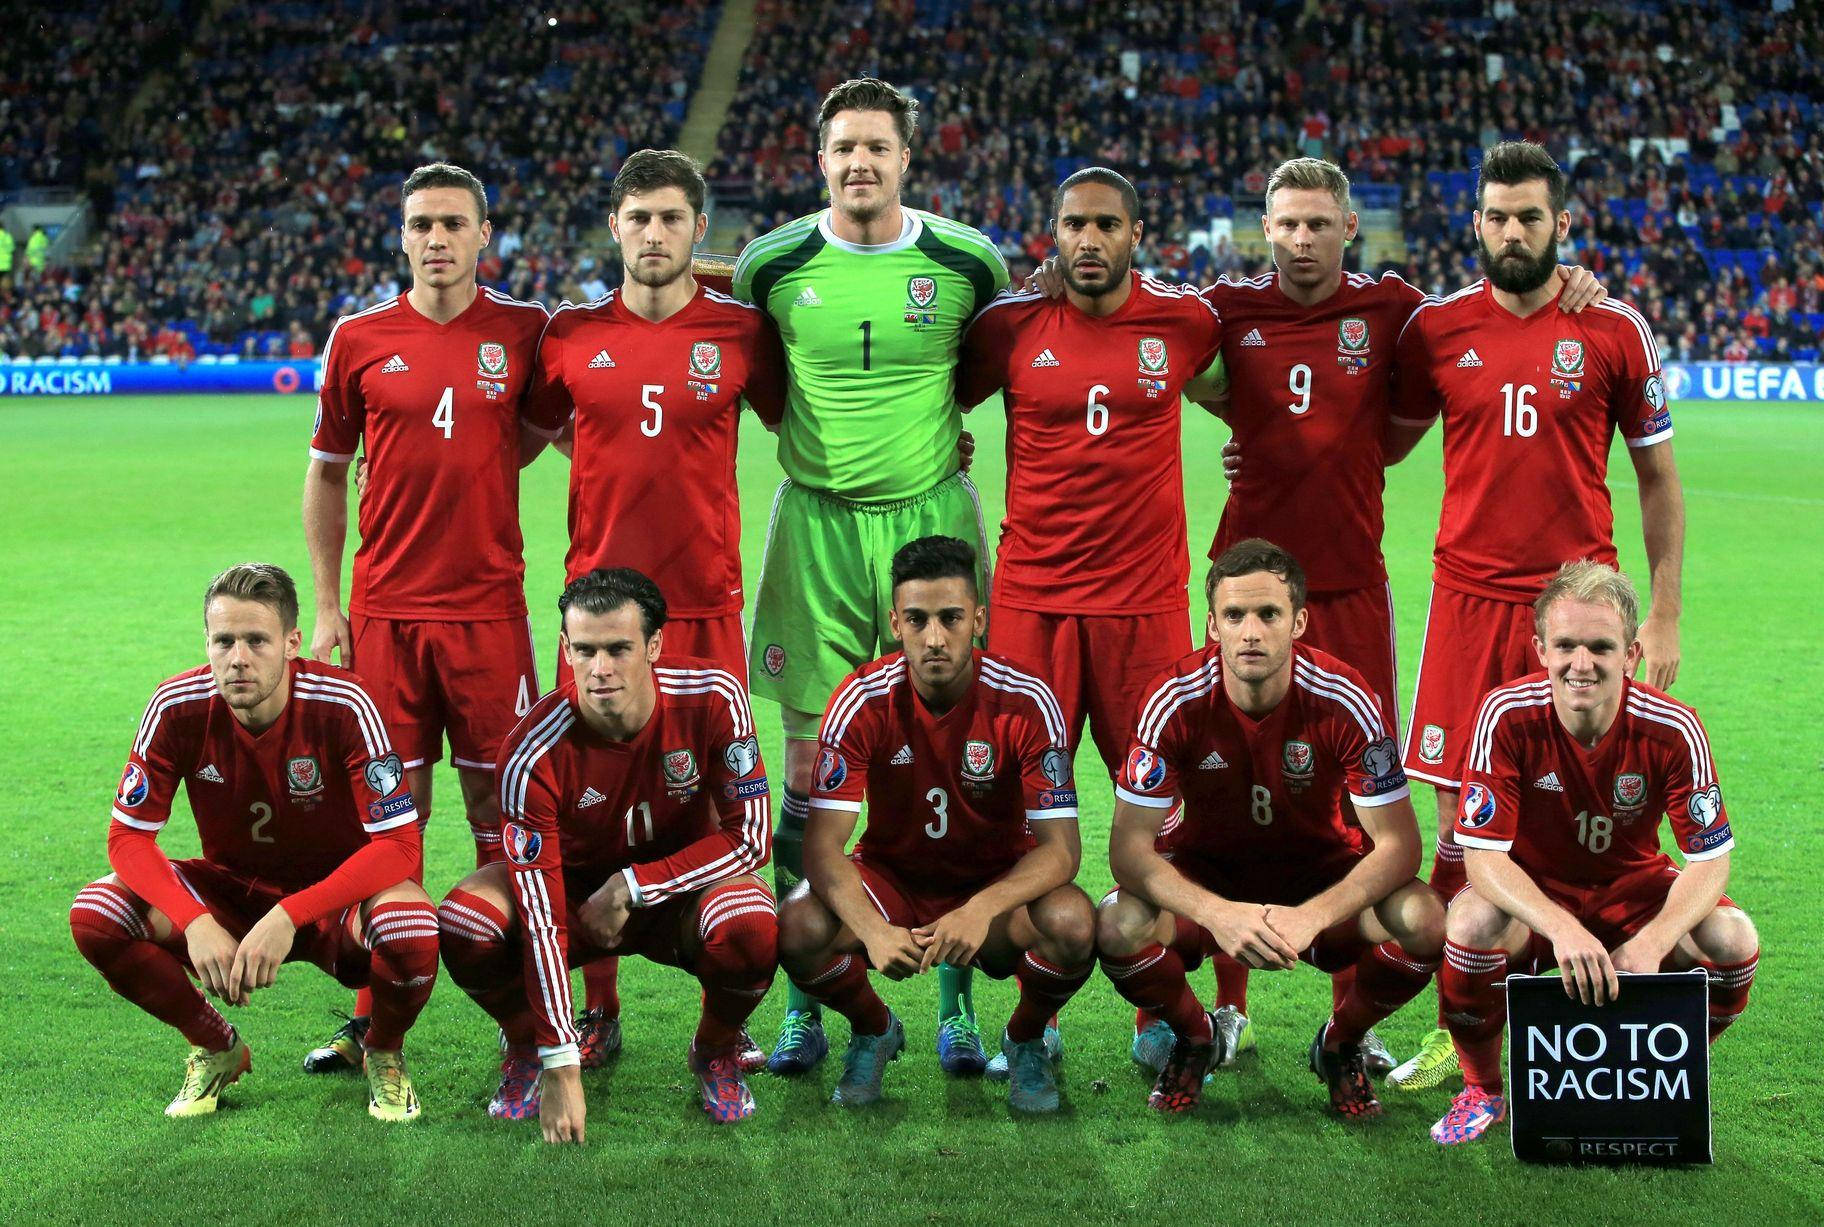 Walesnational Football Team Nej Till Rasism Wallpaper